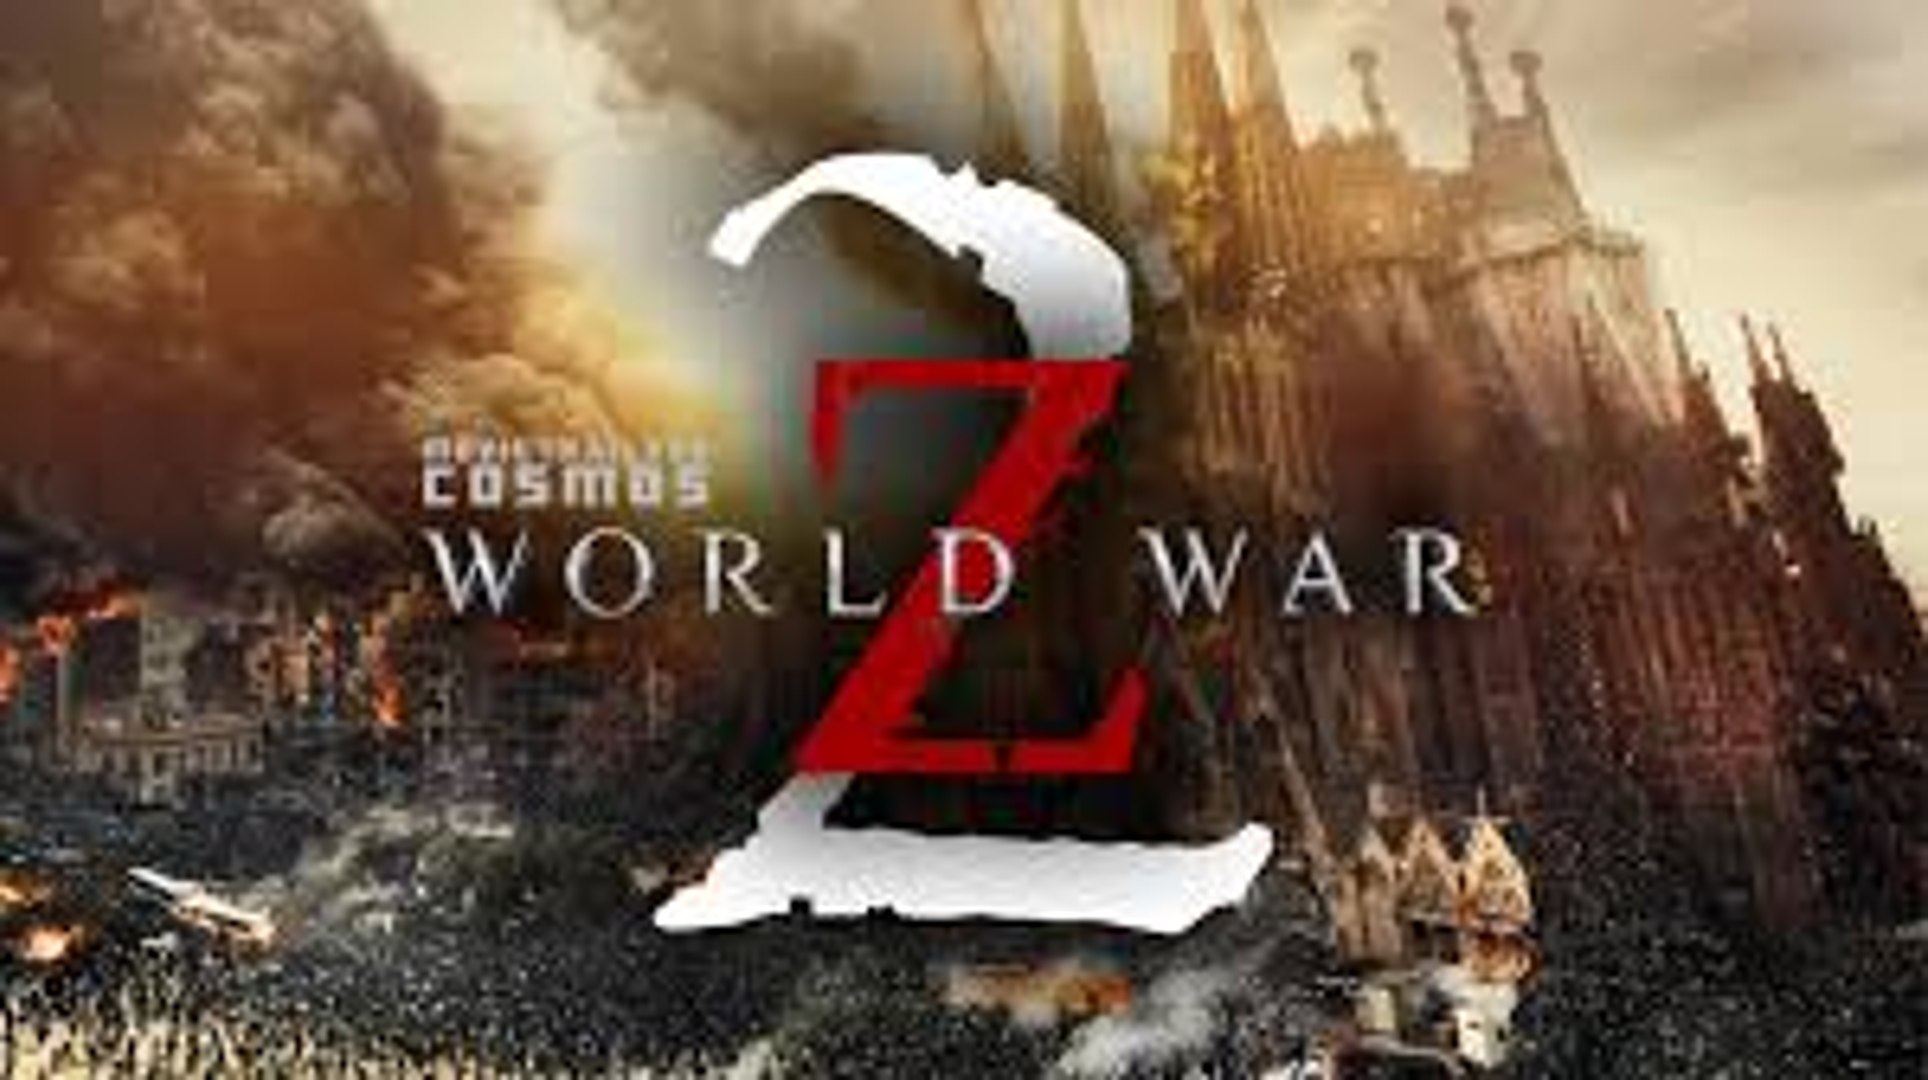 Will we get a World War Z 2 movie?